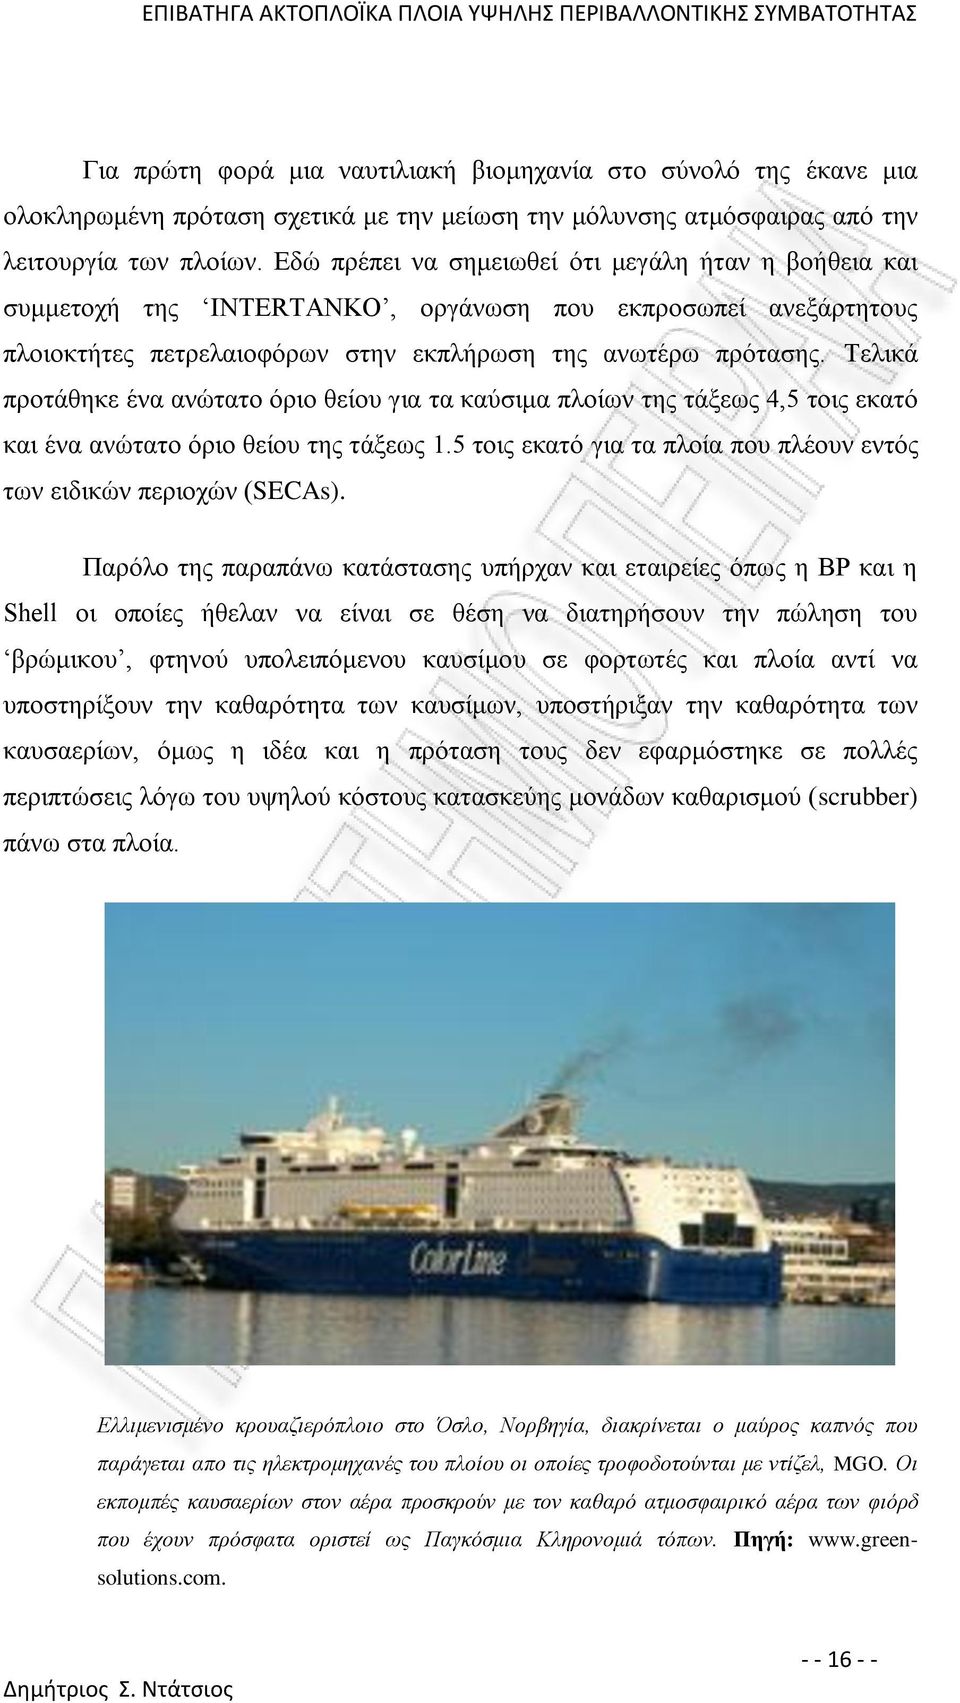 Τελικά προτάθηκε ένα ανώτατο όριο θείου για τα καύσιμα πλοίων της τάξεως 4,5 τοις εκατό και ένα ανώτατο όριο θείου της τάξεως 1.5 τοις εκατό για τα πλοία που πλέουν εντός των ειδικών περιοχών (SECAs).